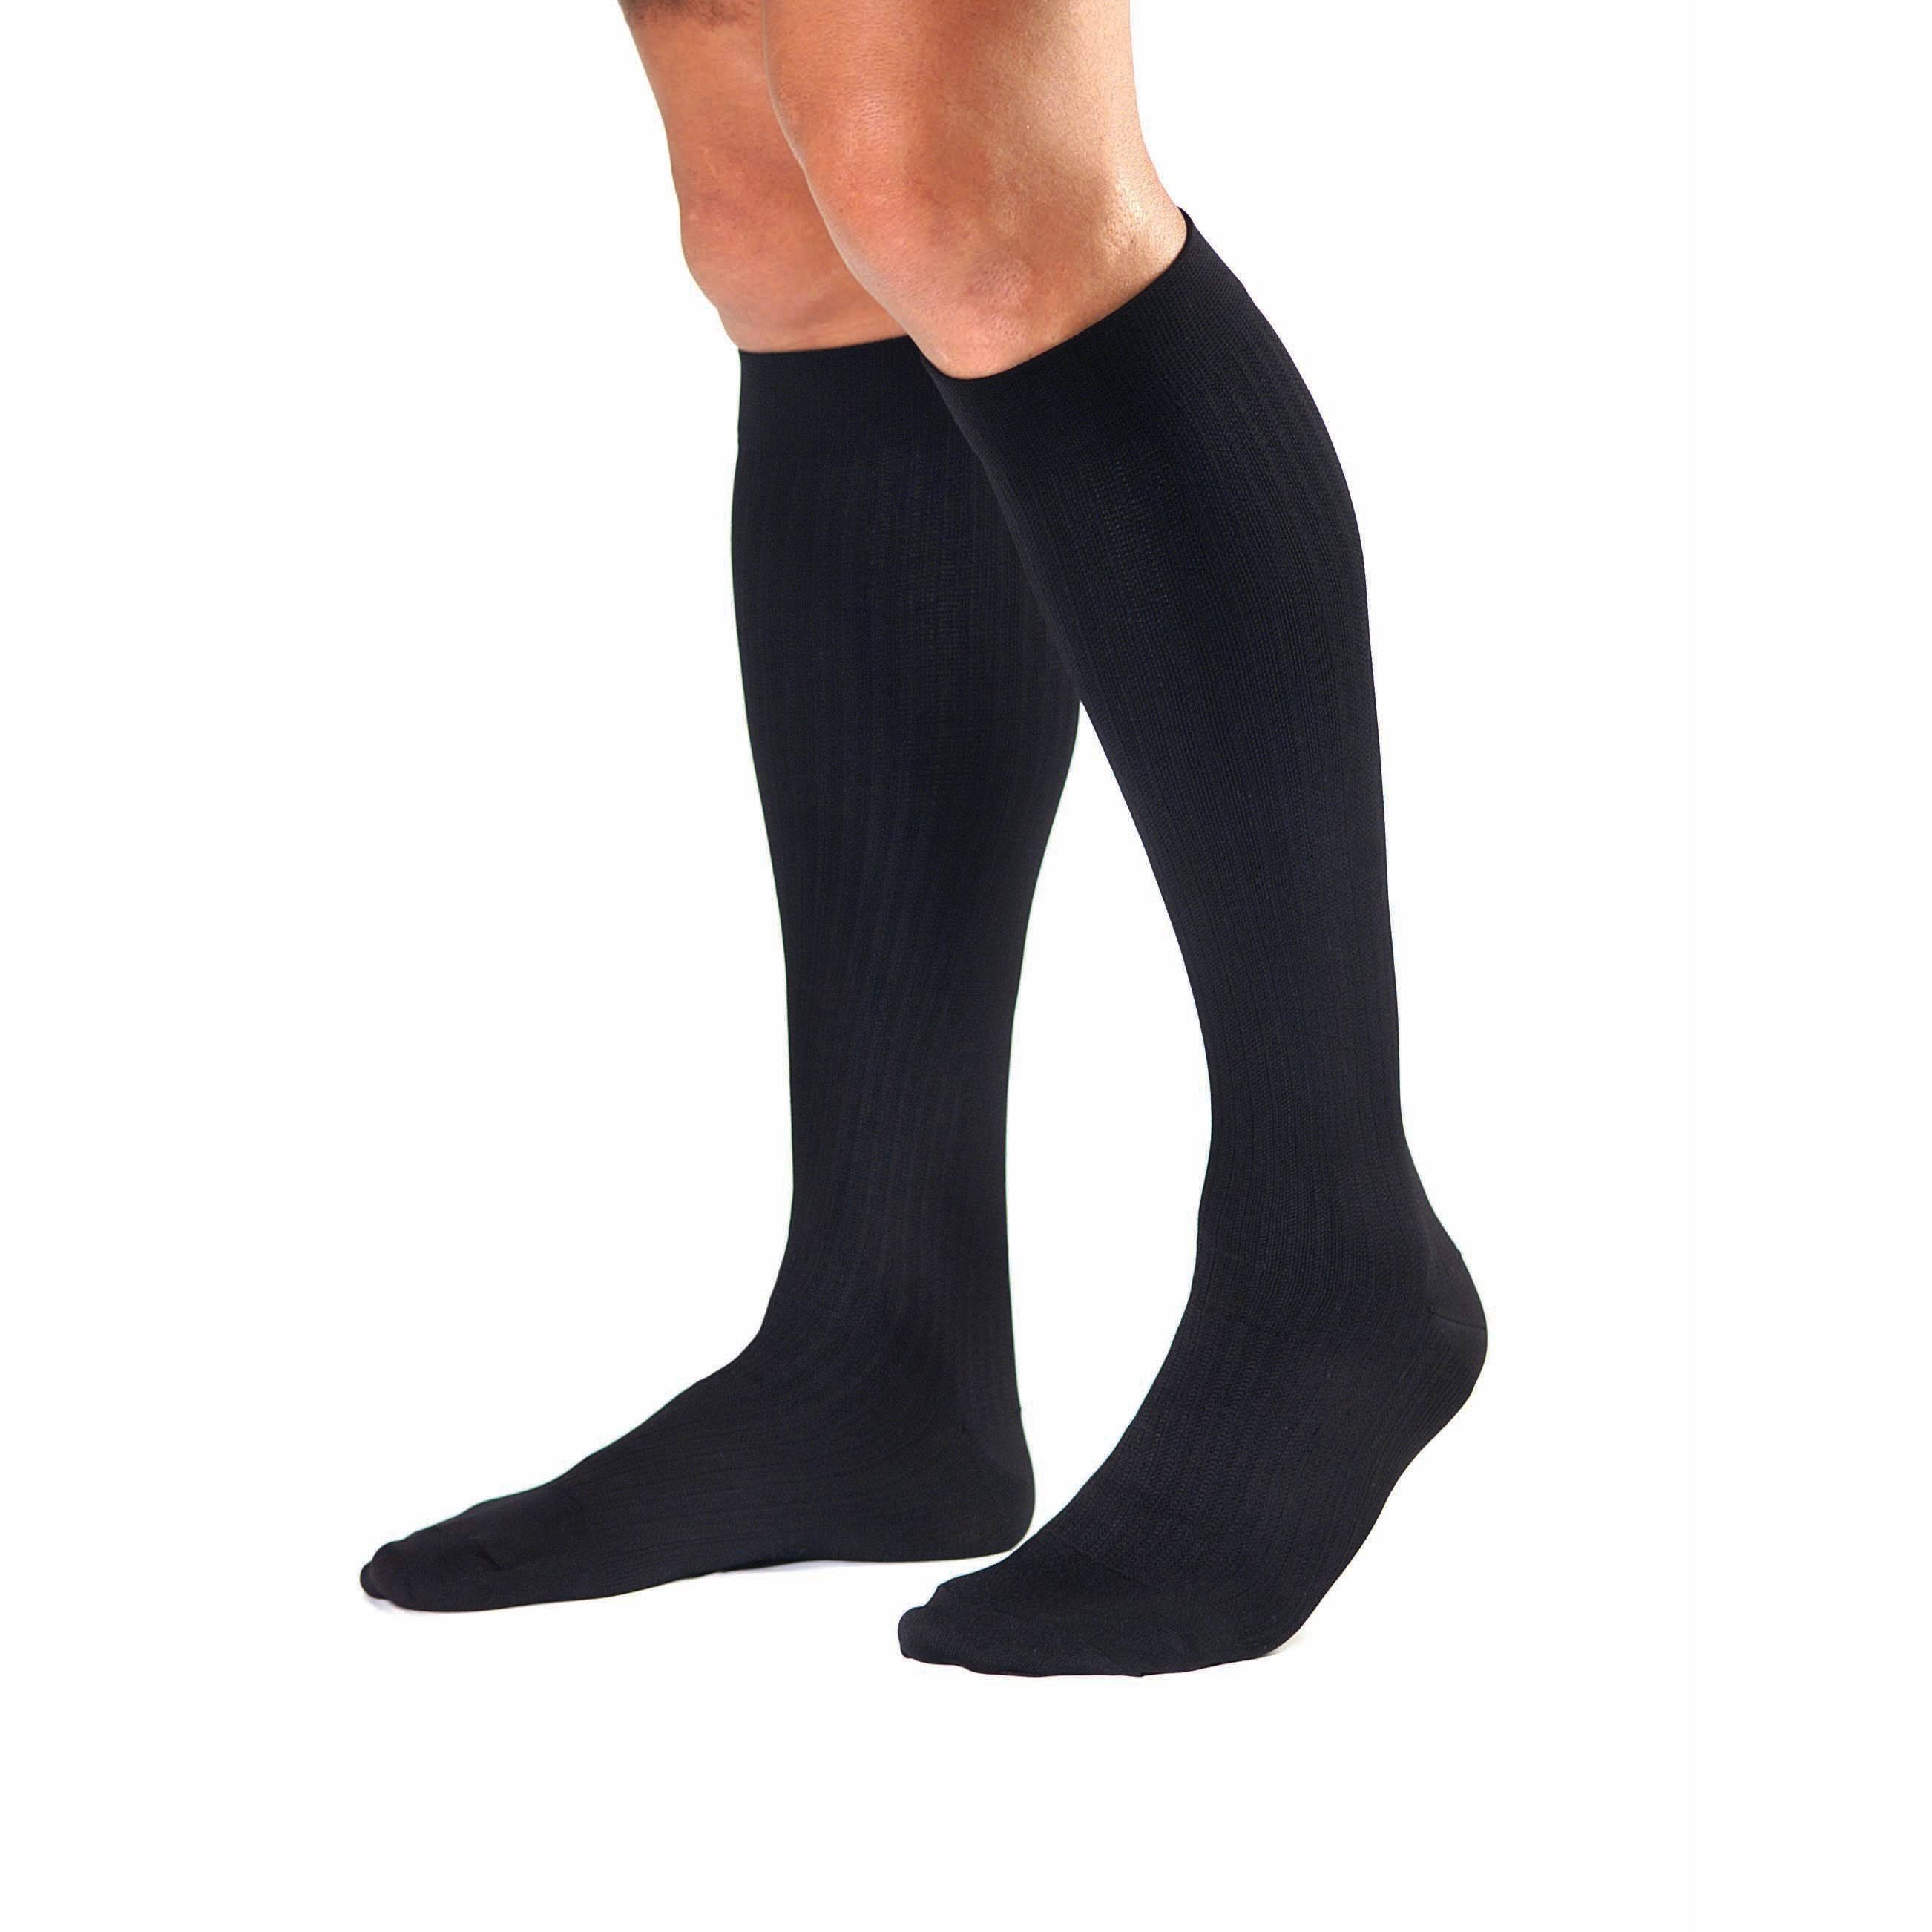 Activa Men's Microfiber Dress Socks - Black, Large, 20-30 mmHg